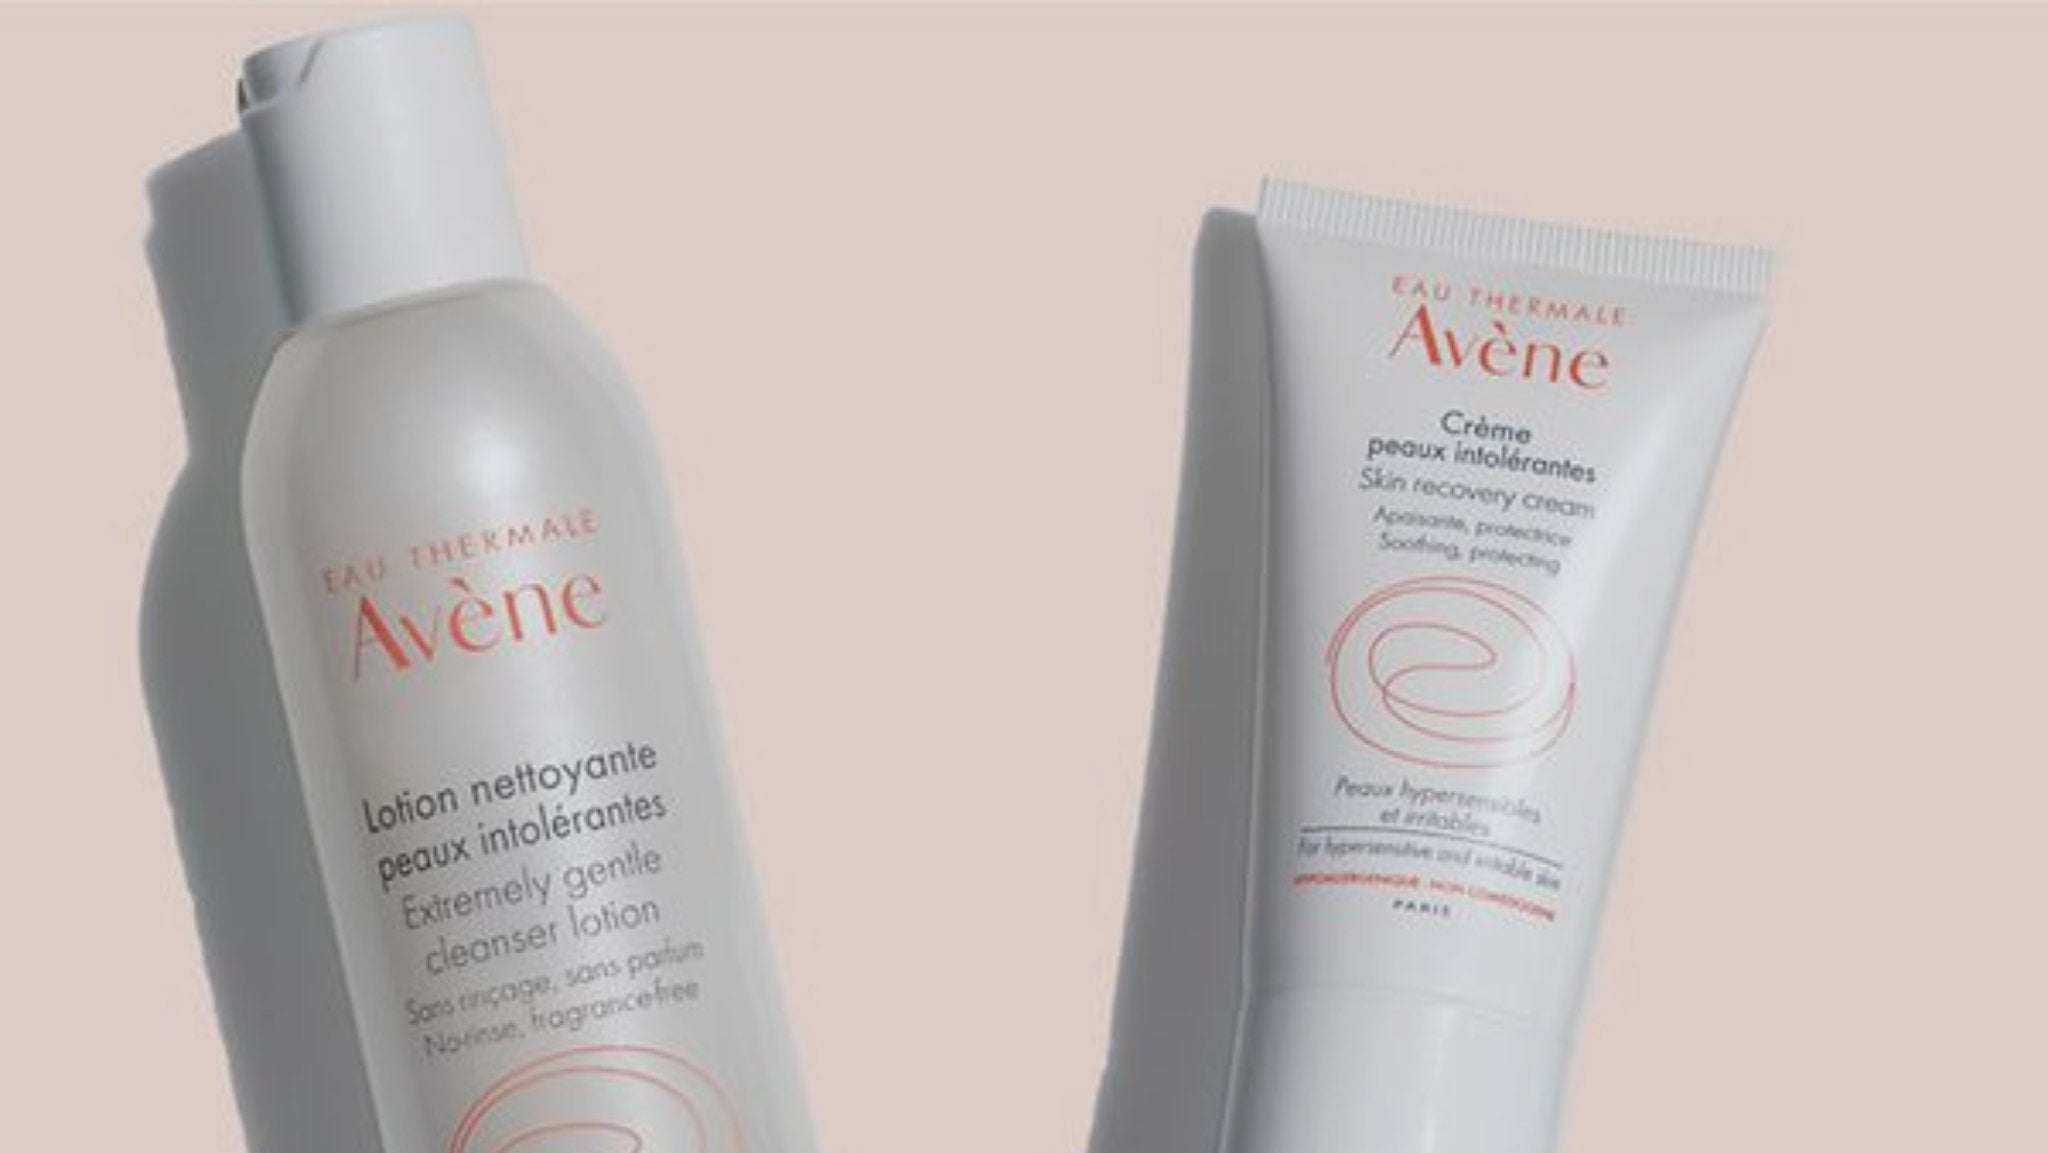 Avene Intolerant range: when less is best - French Beauty Co.